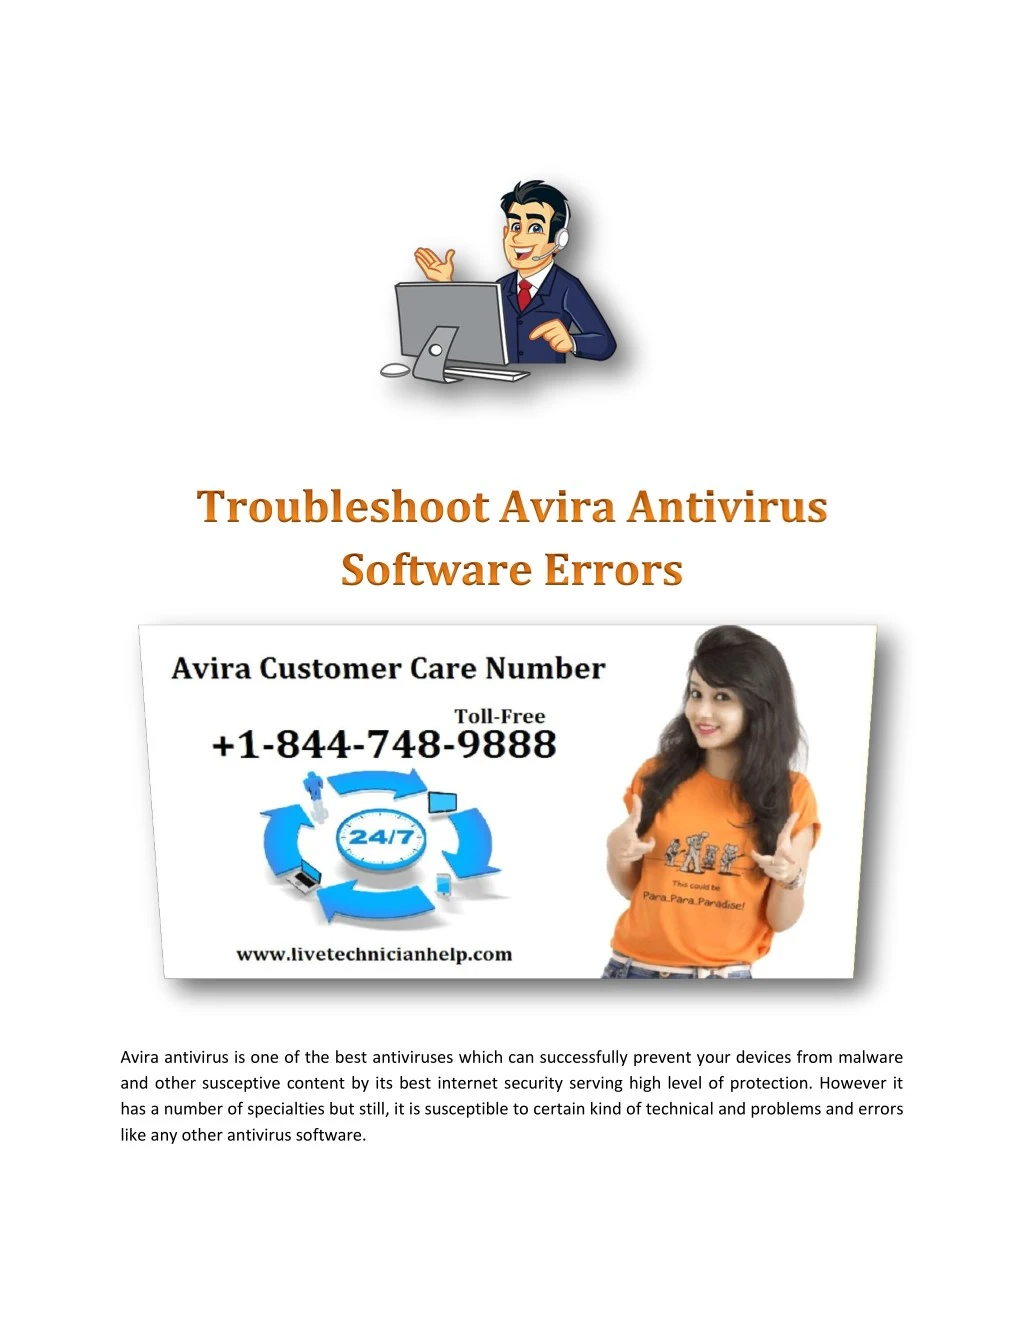 avira antivirus is one of the best antiviruses